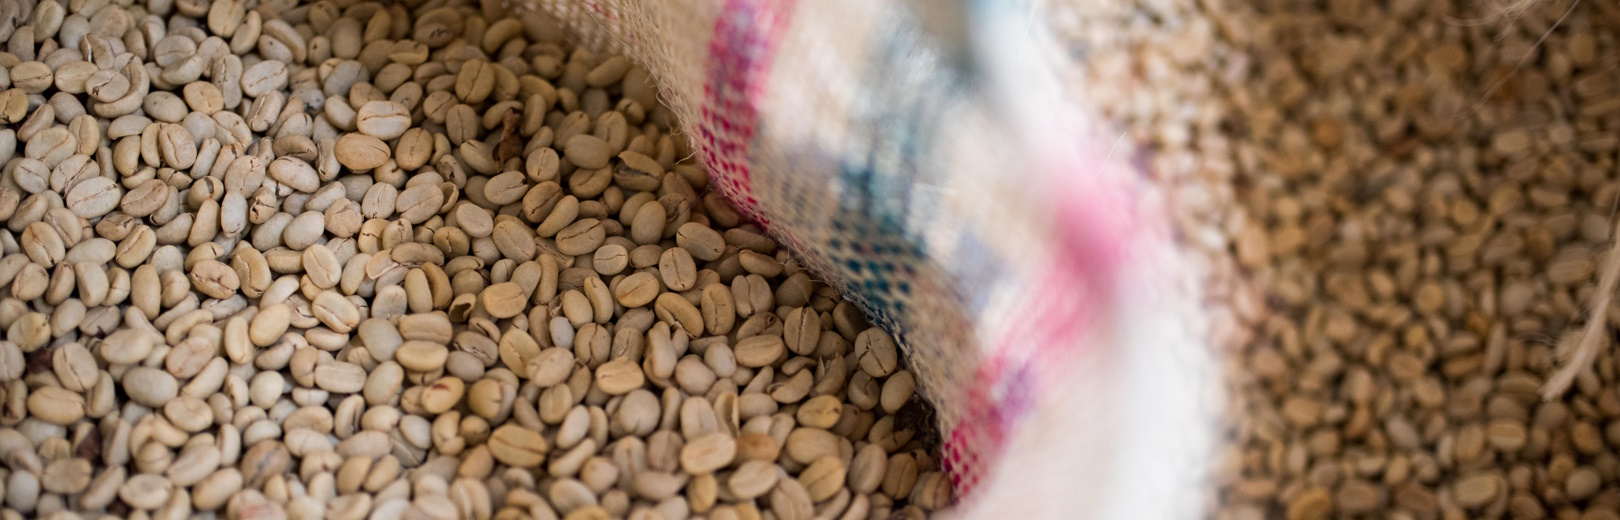 grãos de café verde dentro de uma saca aberta - como as torrefações podem gerenciar seus estoques de café verde